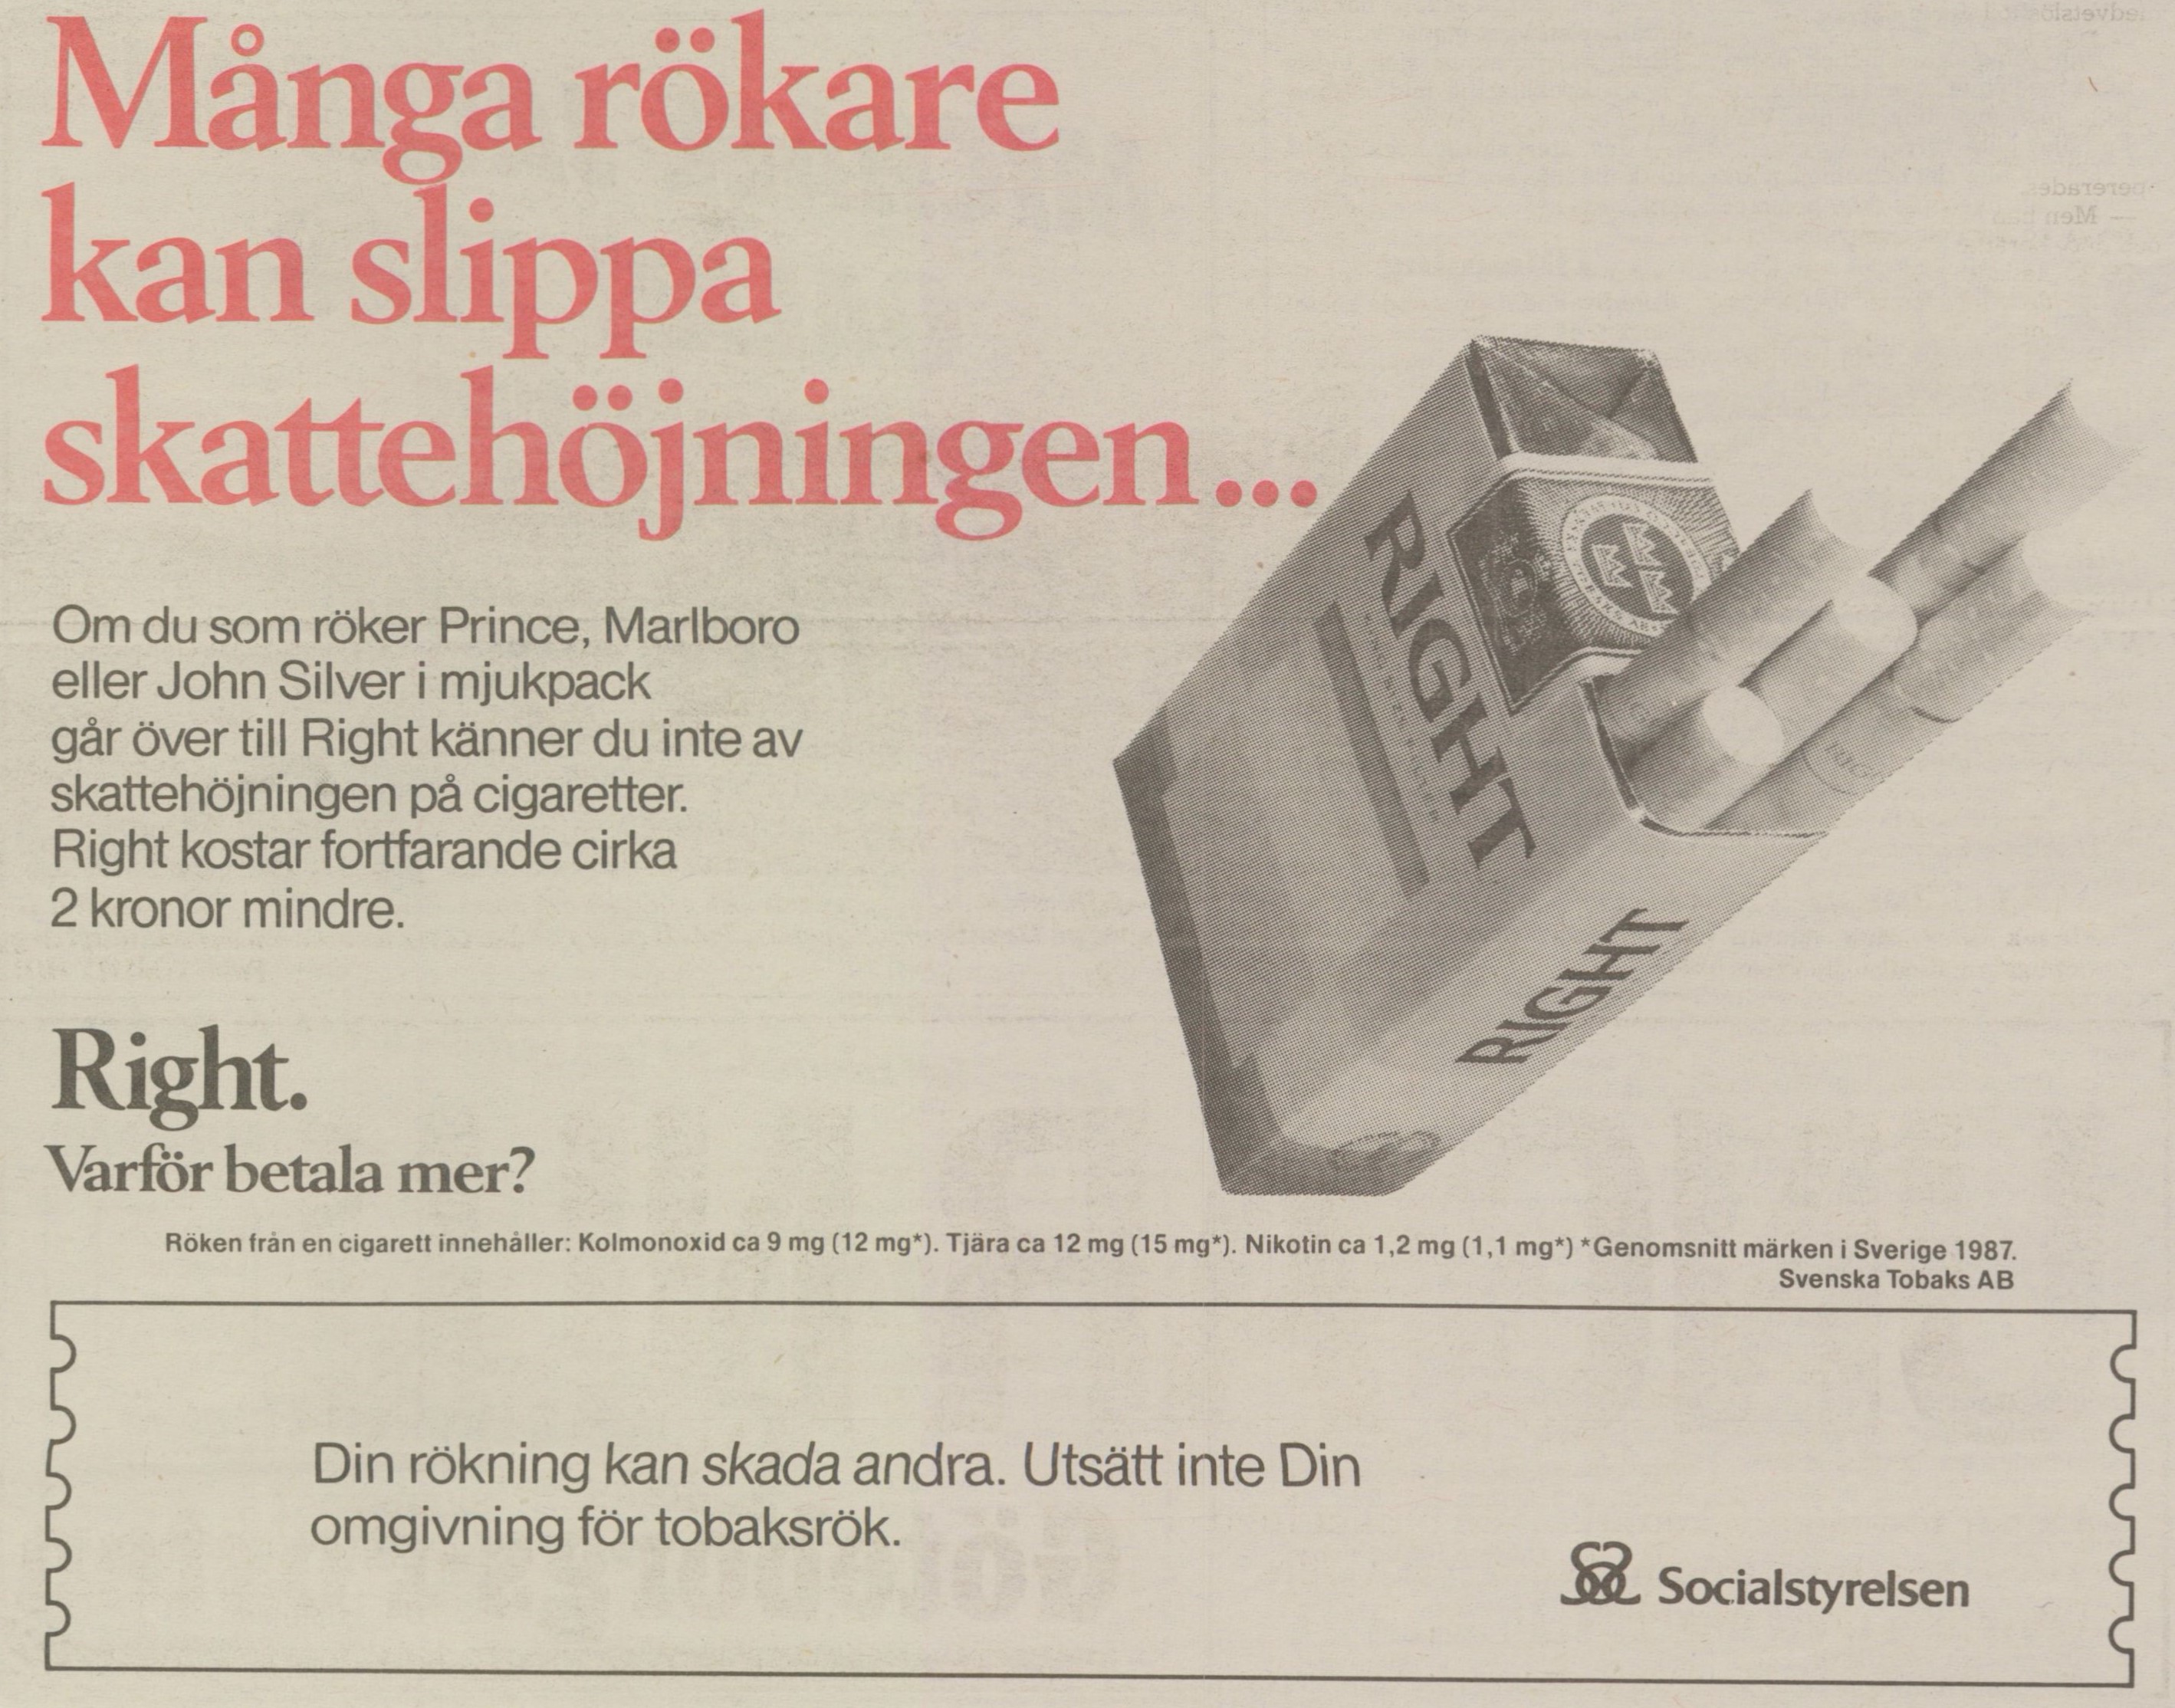 Tidningsreklam, bild på cigarettpaket av märket Right. Text: Många rökare kan slippa skattehöjningen.